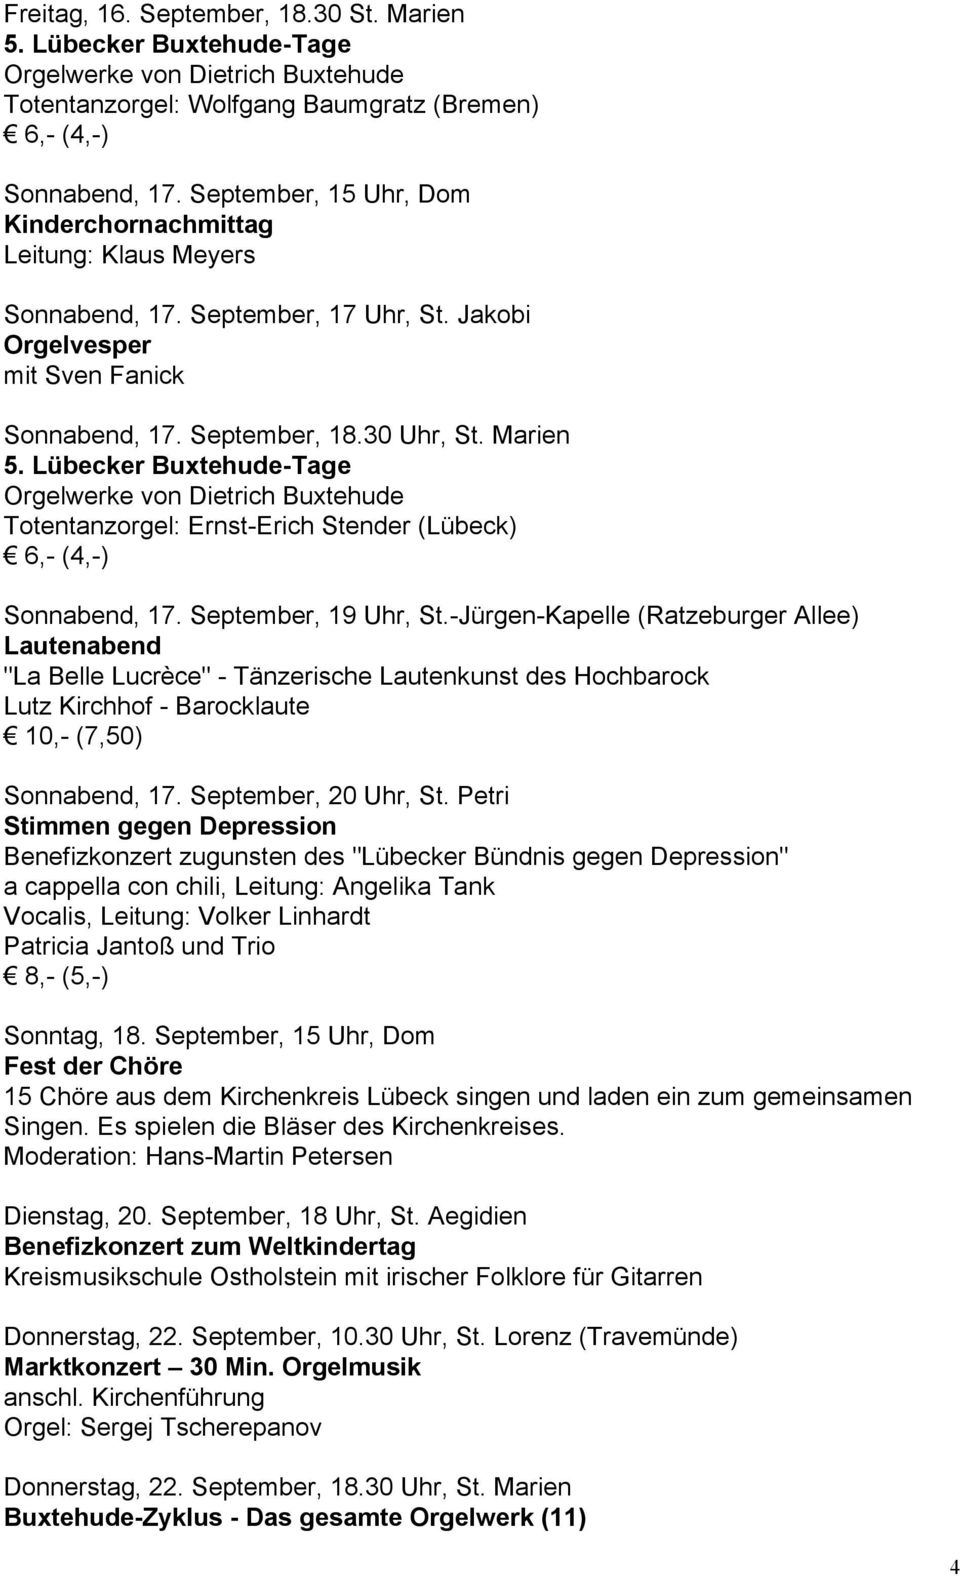 Lübecker Buxtehude-Tage Orgelwerke von Dietrich Buxtehude Totentanzorgel: Ernst-Erich Stender (Lübeck) Sonnabend, 17. September, 19 Uhr, St.